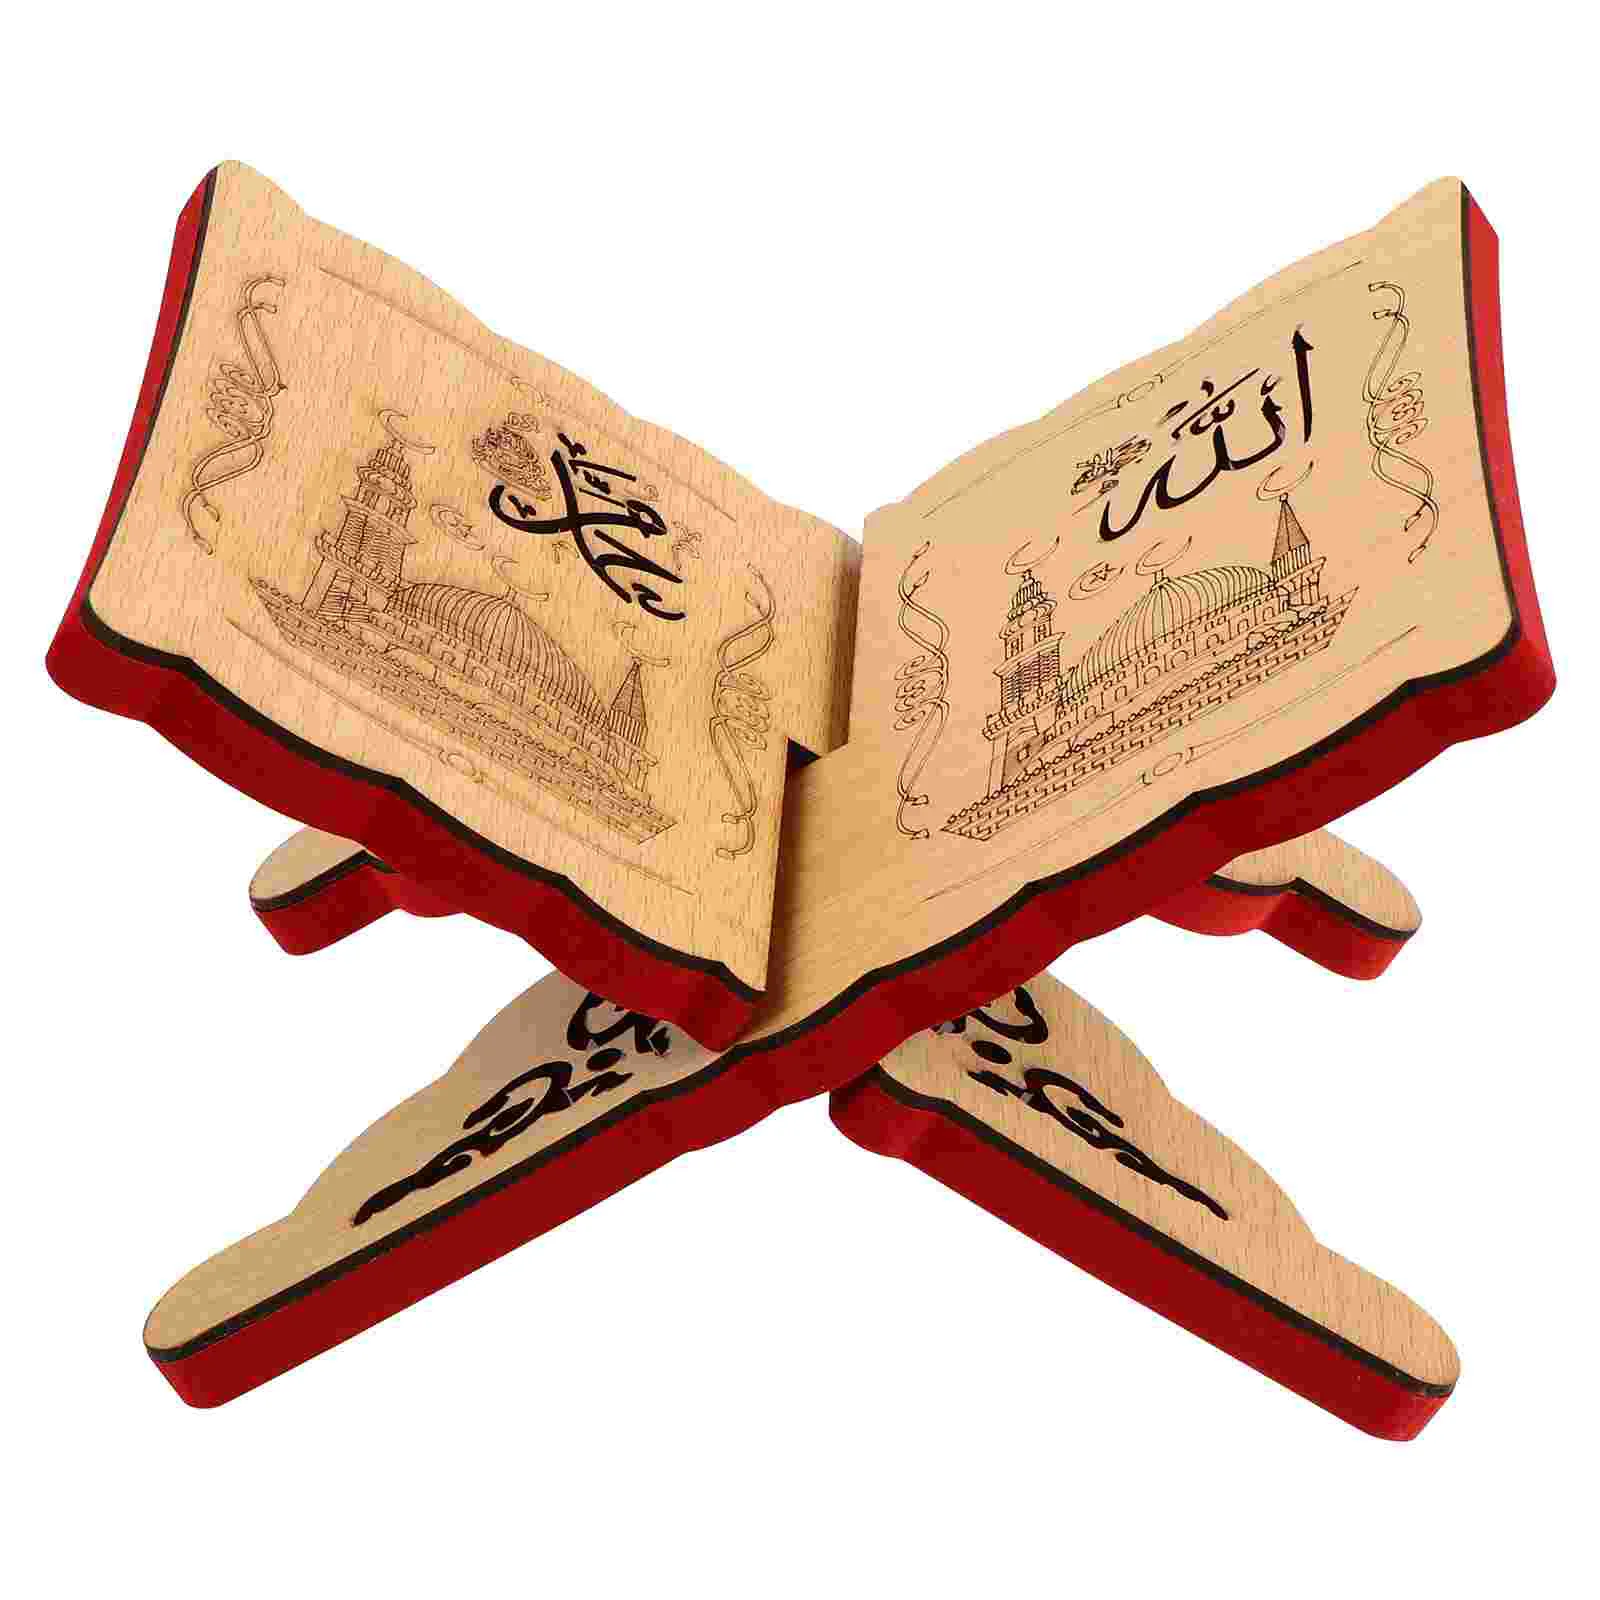 

Исламская Библия, стеллаж для хранения книг, настольный органайзер, деревянная витрина, складная стойка